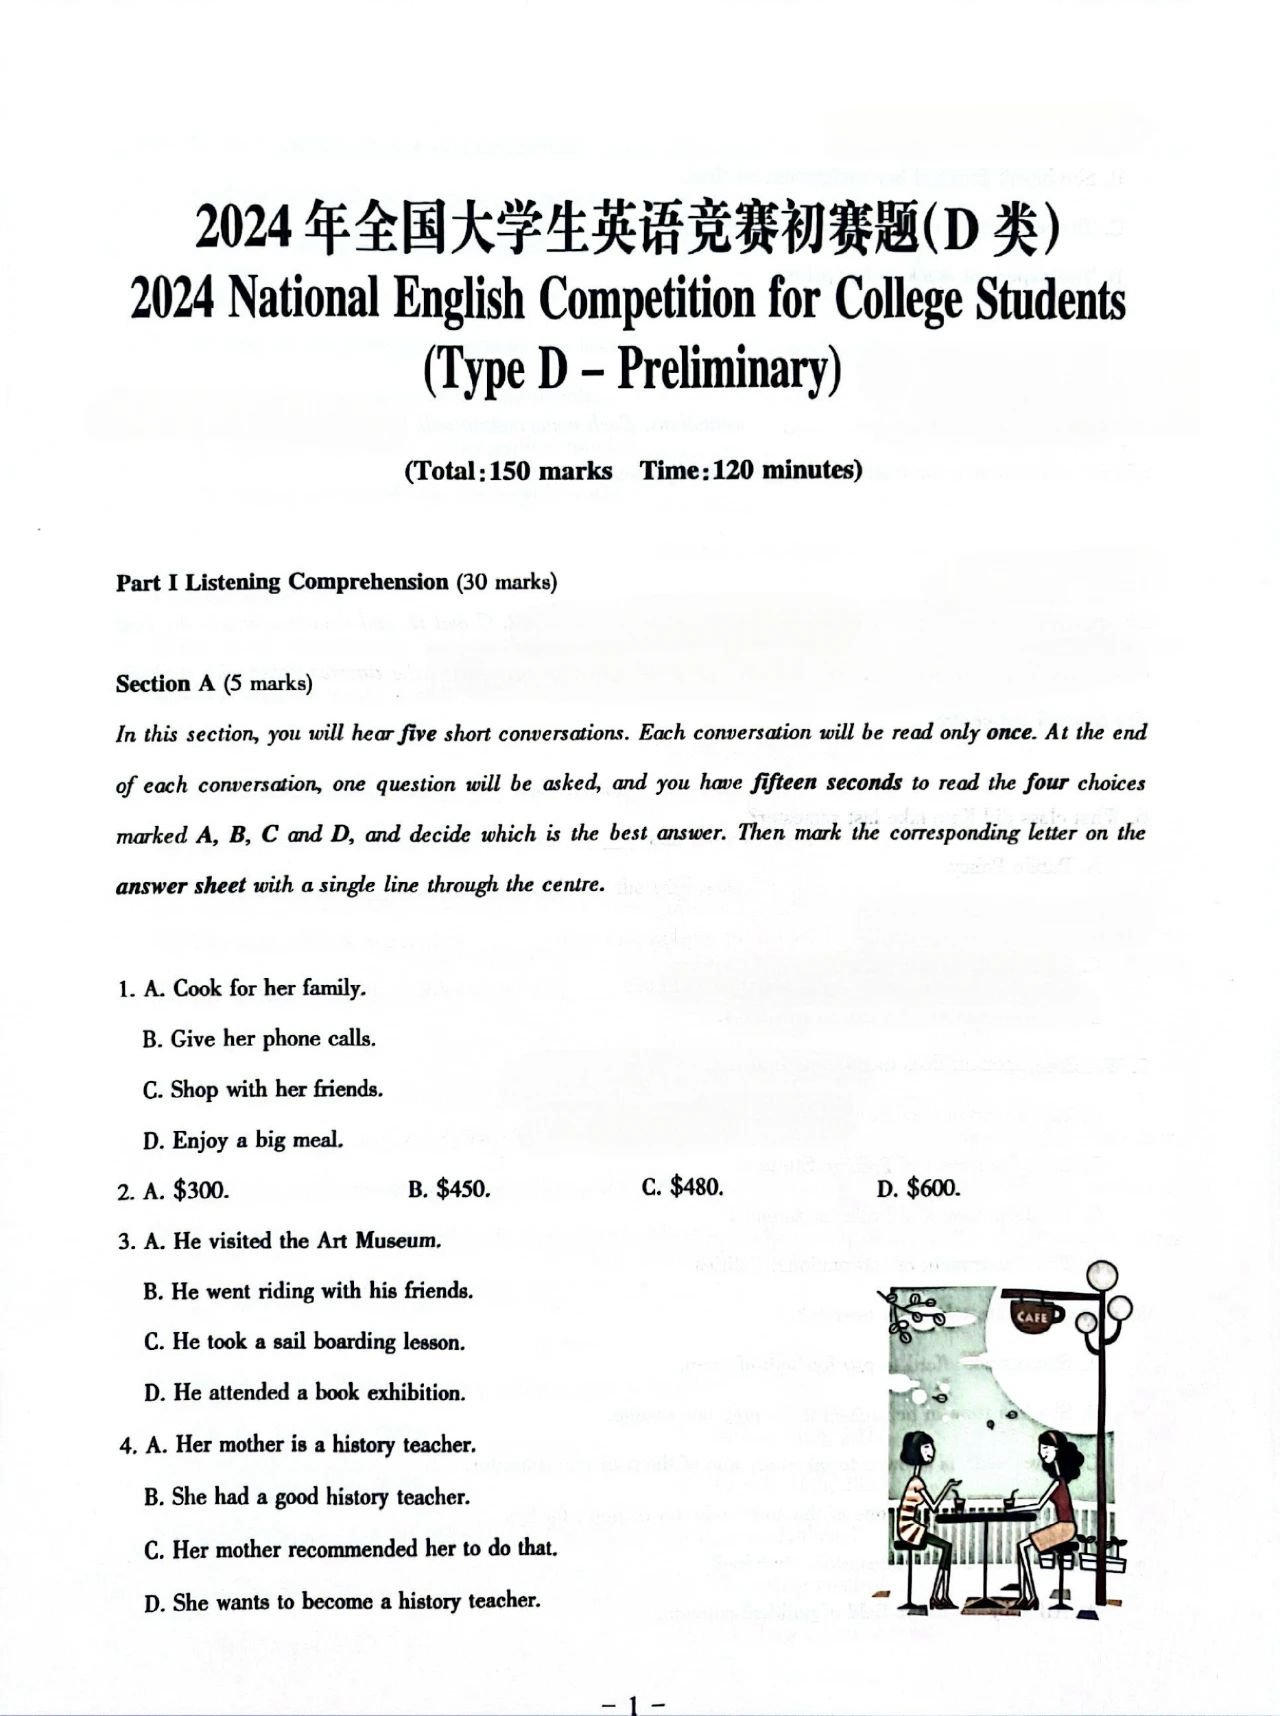 【大英赛答案】2024年全国大学生英语竞赛初赛题及参考答案(图5)